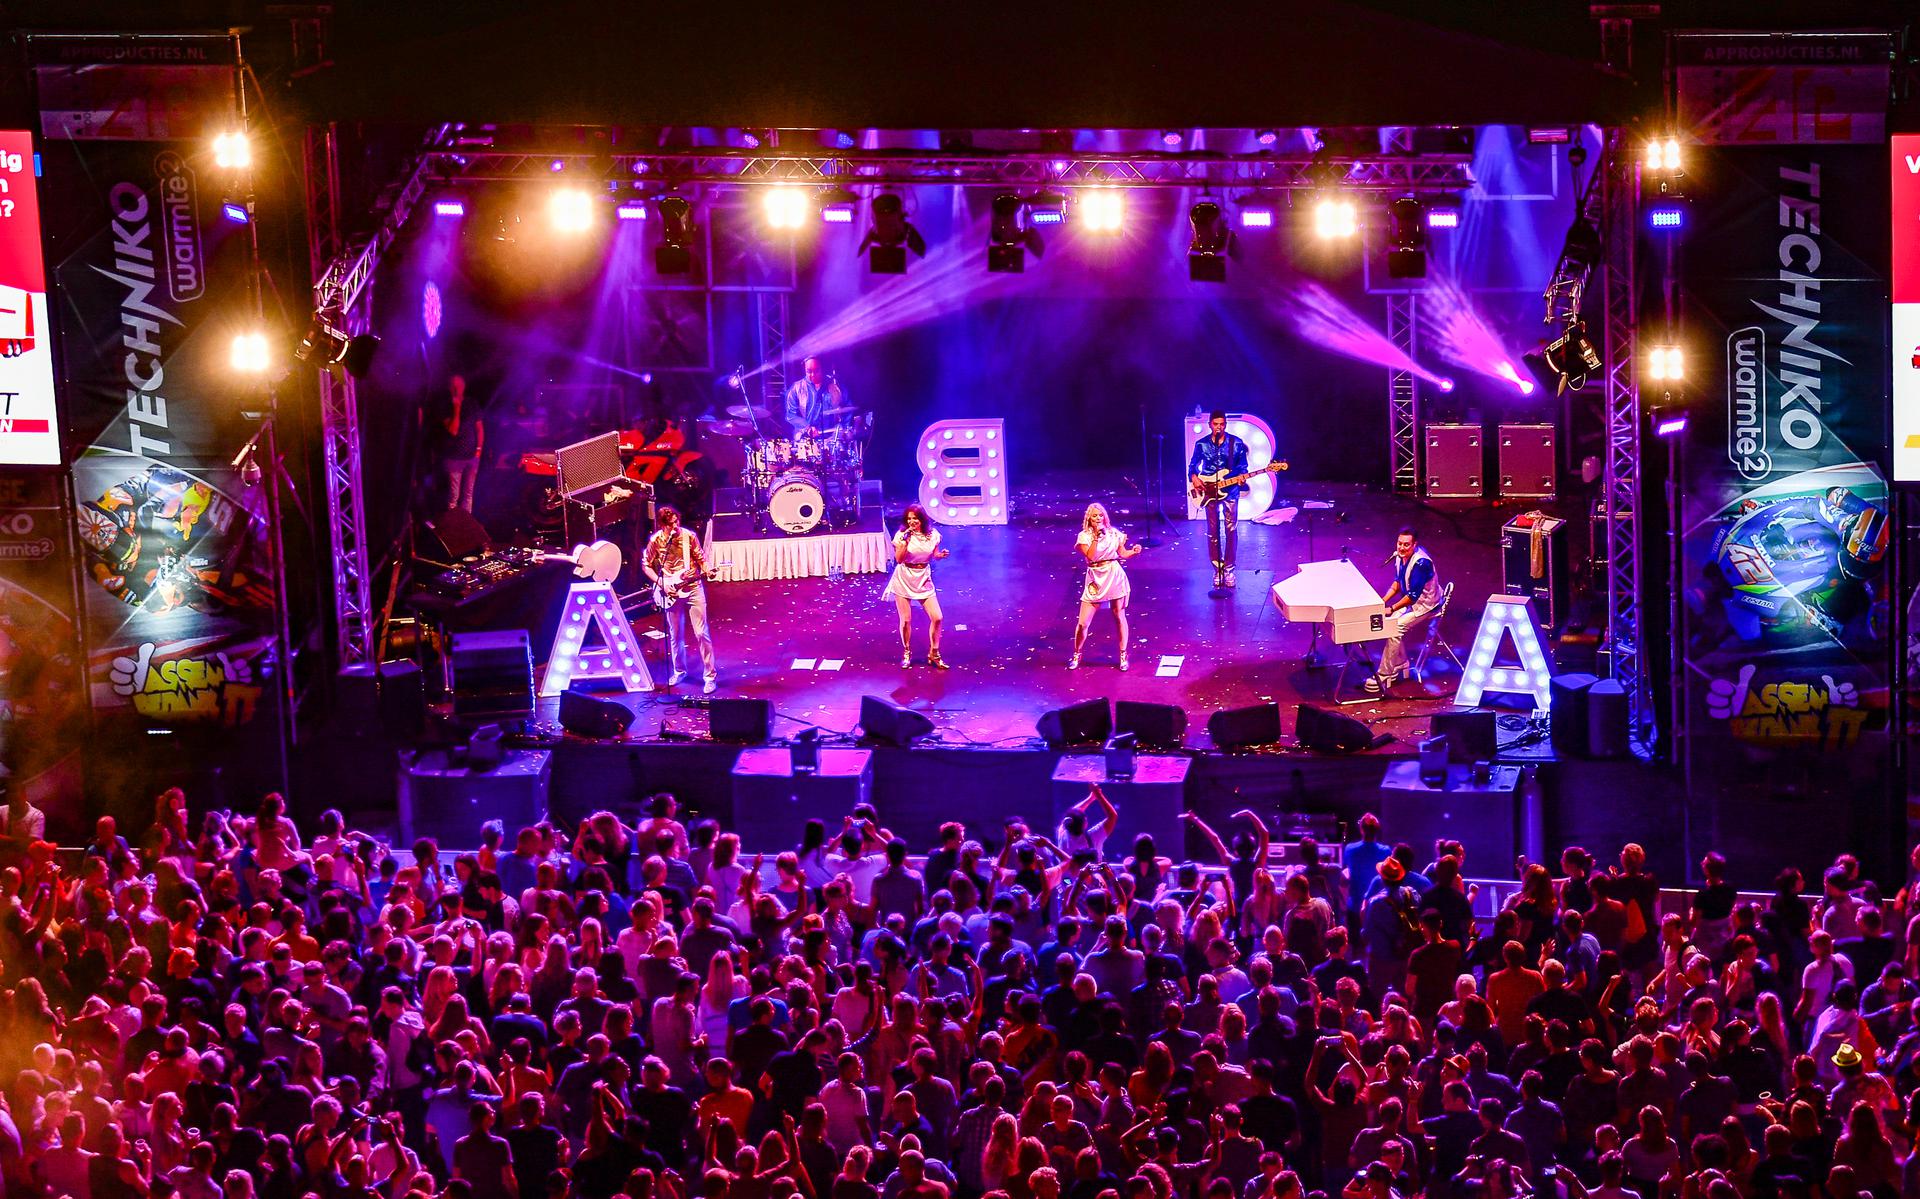 De Abba Tribute was ook in 2019 een van de headliners op het TT Festival in Assen.